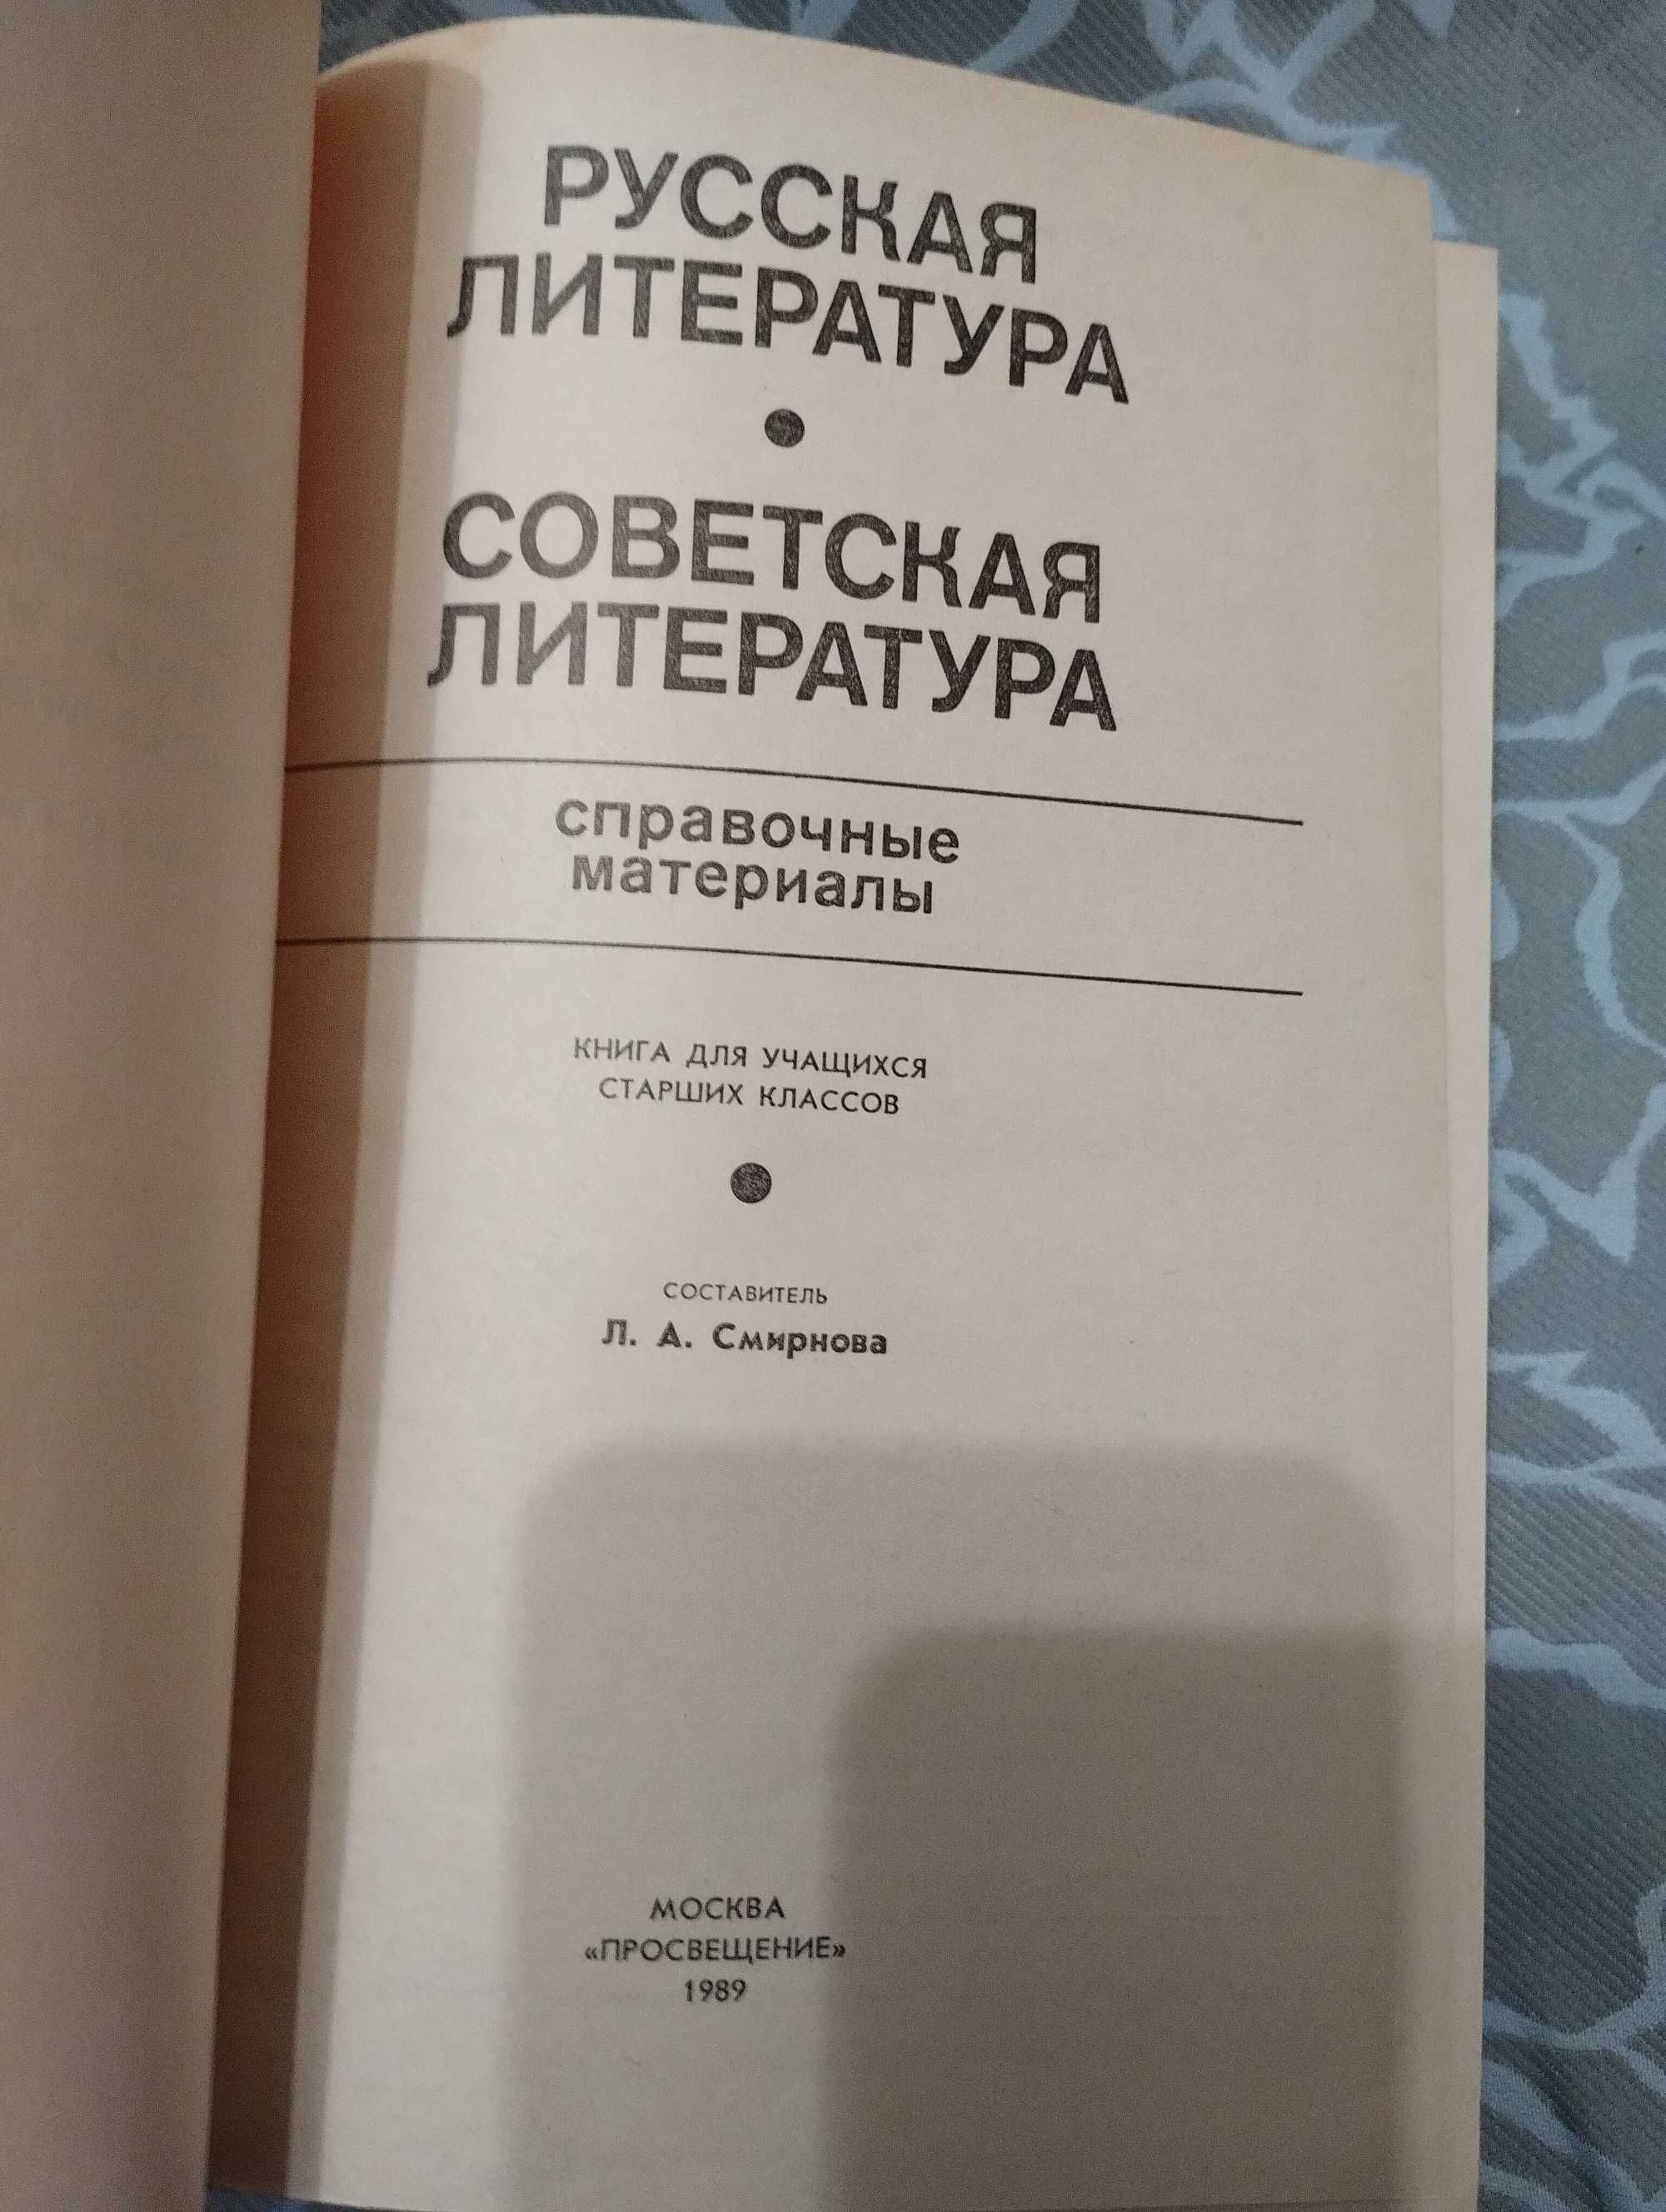 Справочные материалы Русская литература. Советская литература. 1989 г.